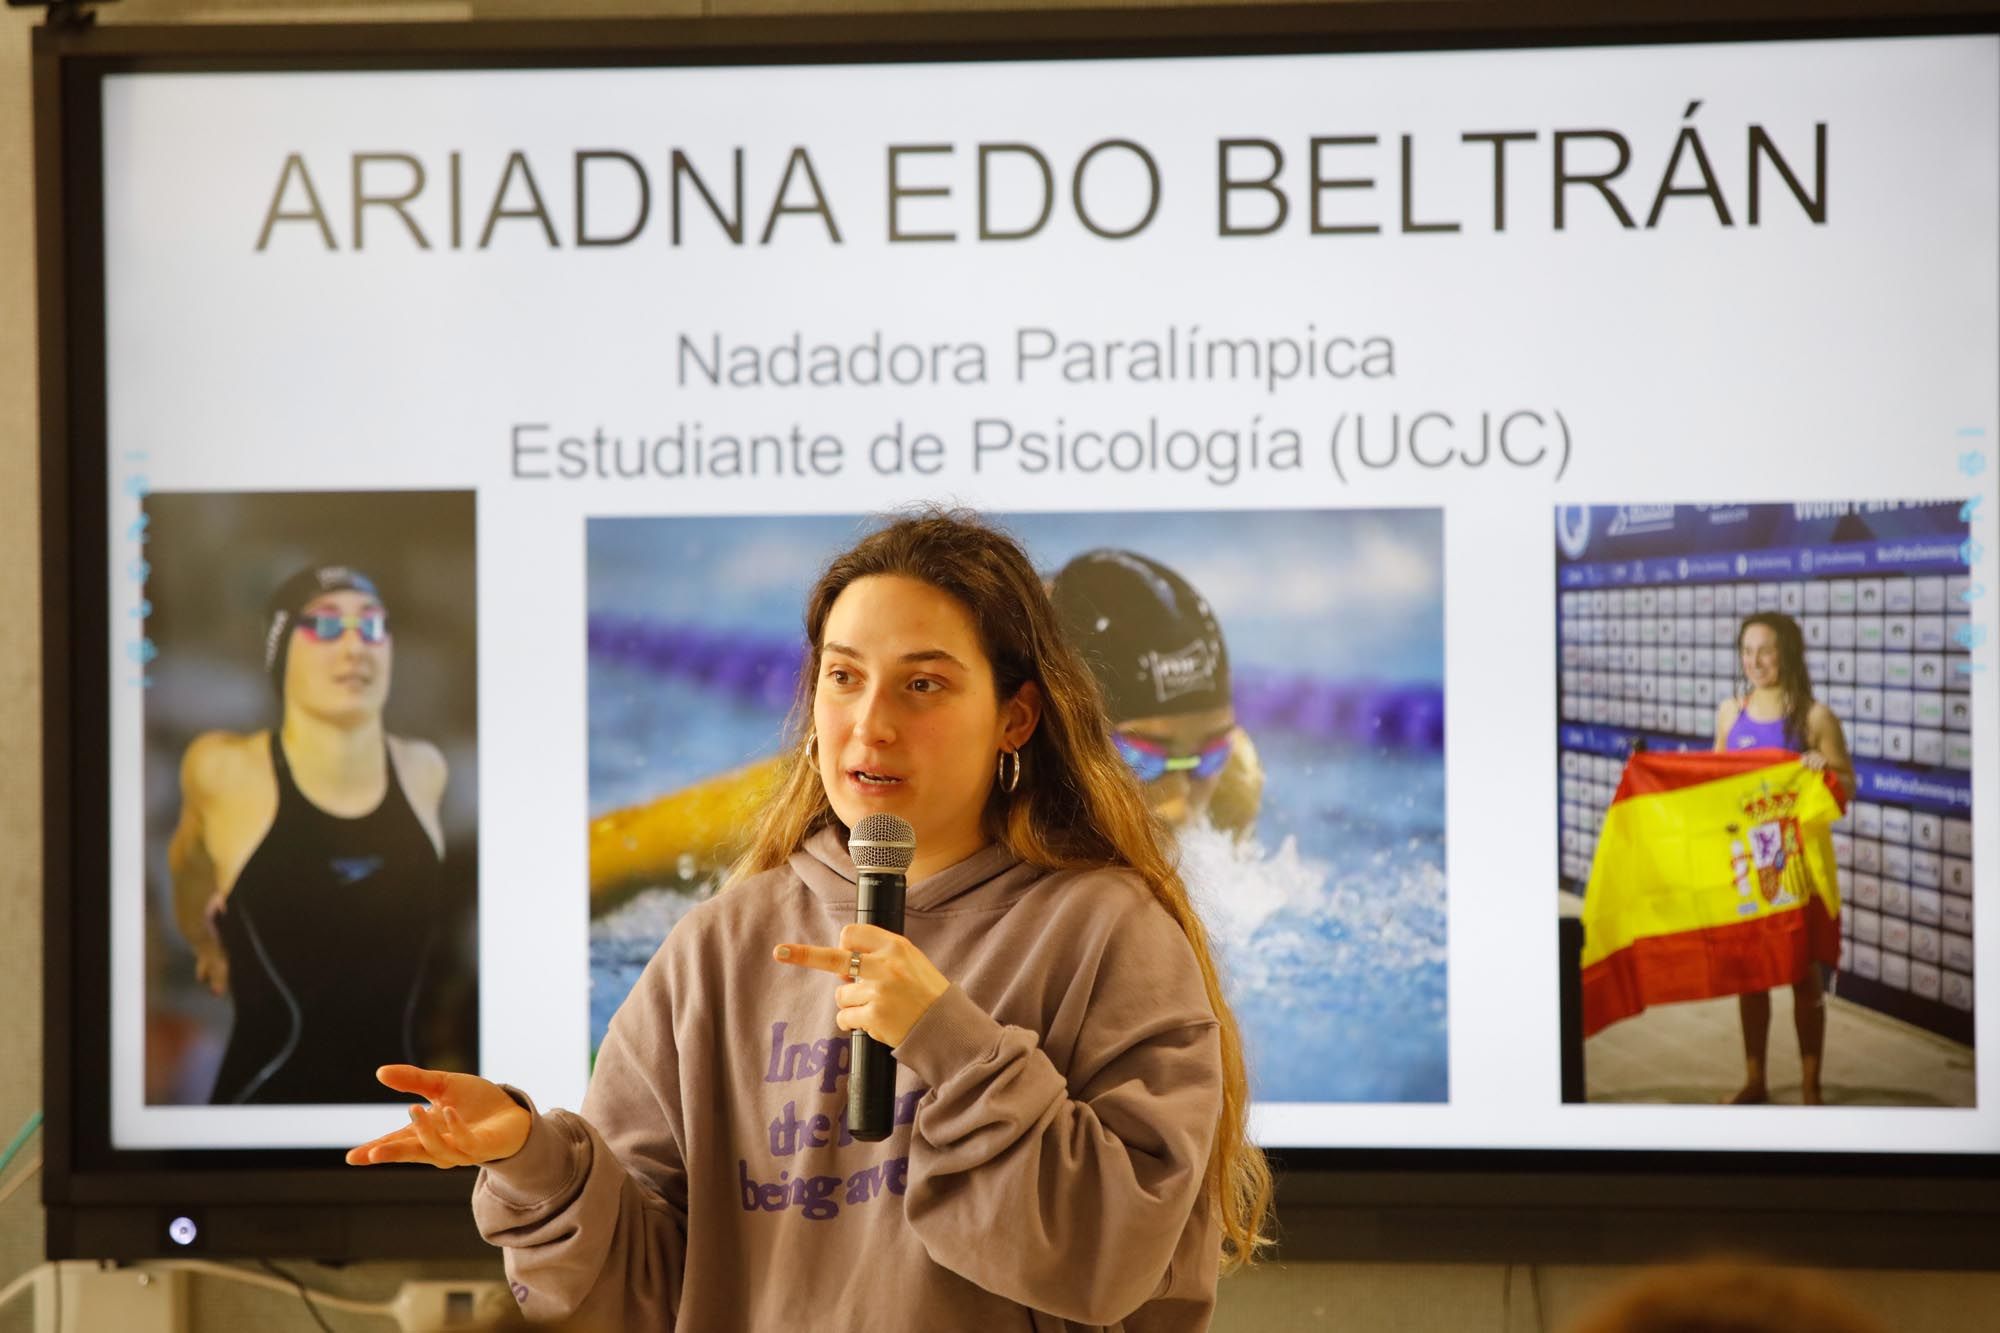 Conferencia de la nadadora paraolímpica Ariadna Edo Beltrán en el instituto Balàfia